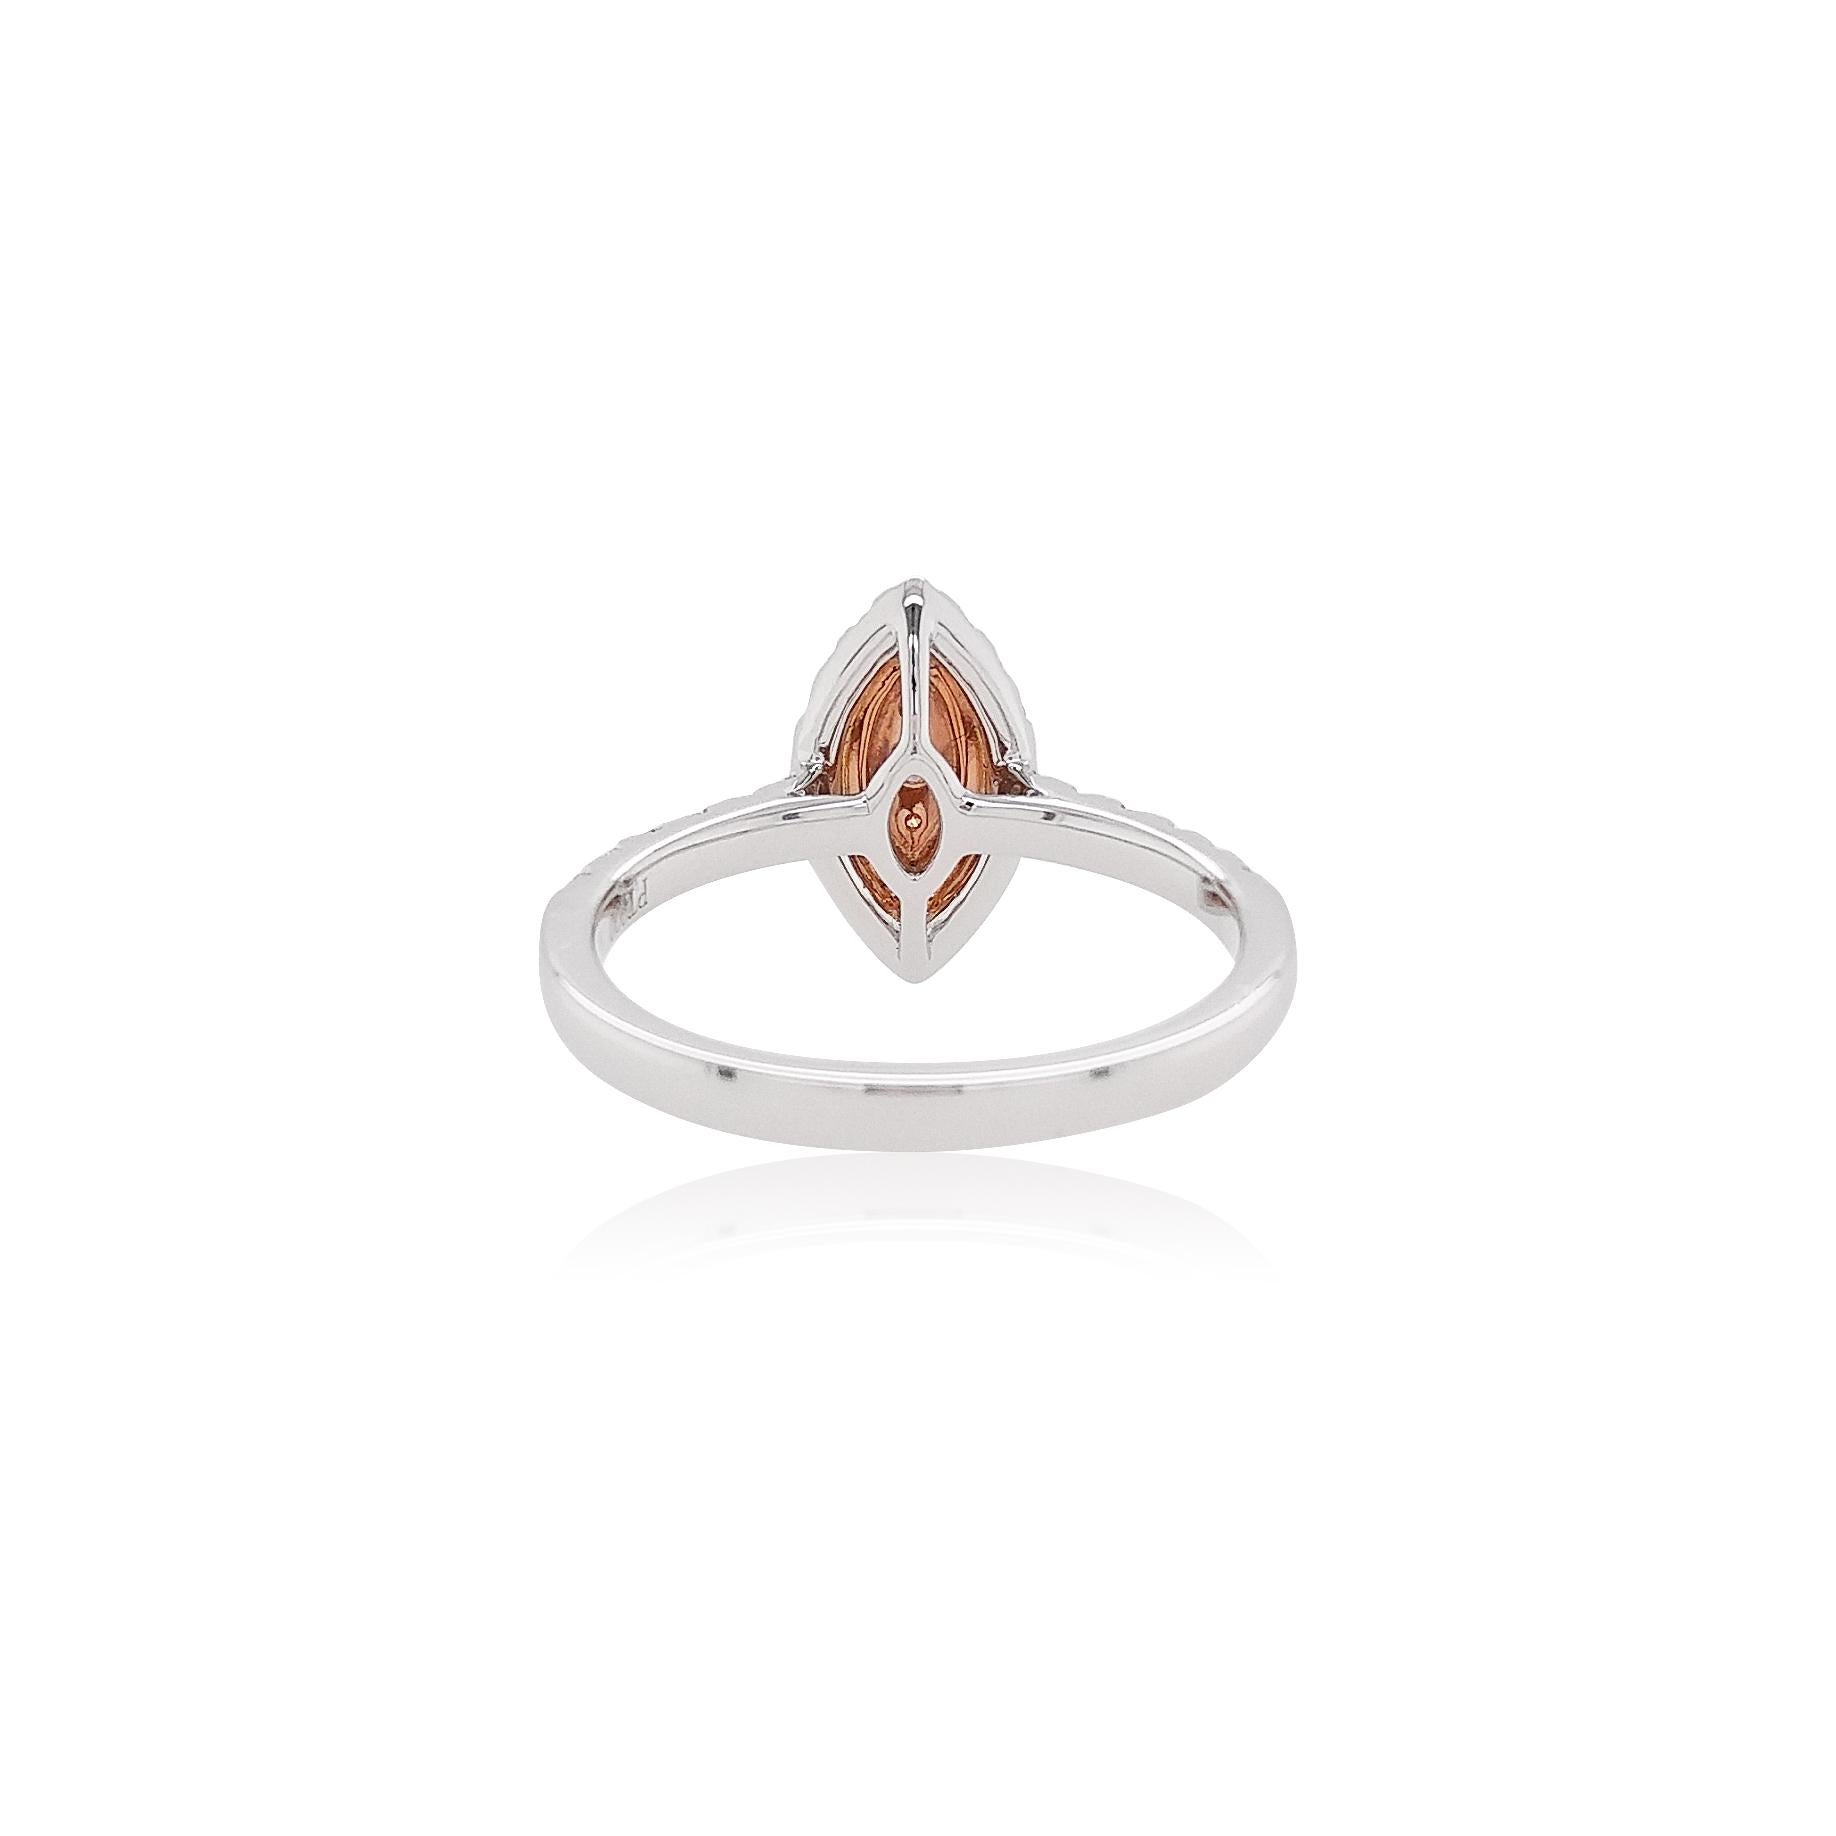 Cette délicate bague en platine met en valeur les brillants diamants roses Argyle au premier plan de son design. Les teintes spectaculaires des diamants roses sont parfaitement accentuées par le sertissage en or rose 18 carats et en platine, et par